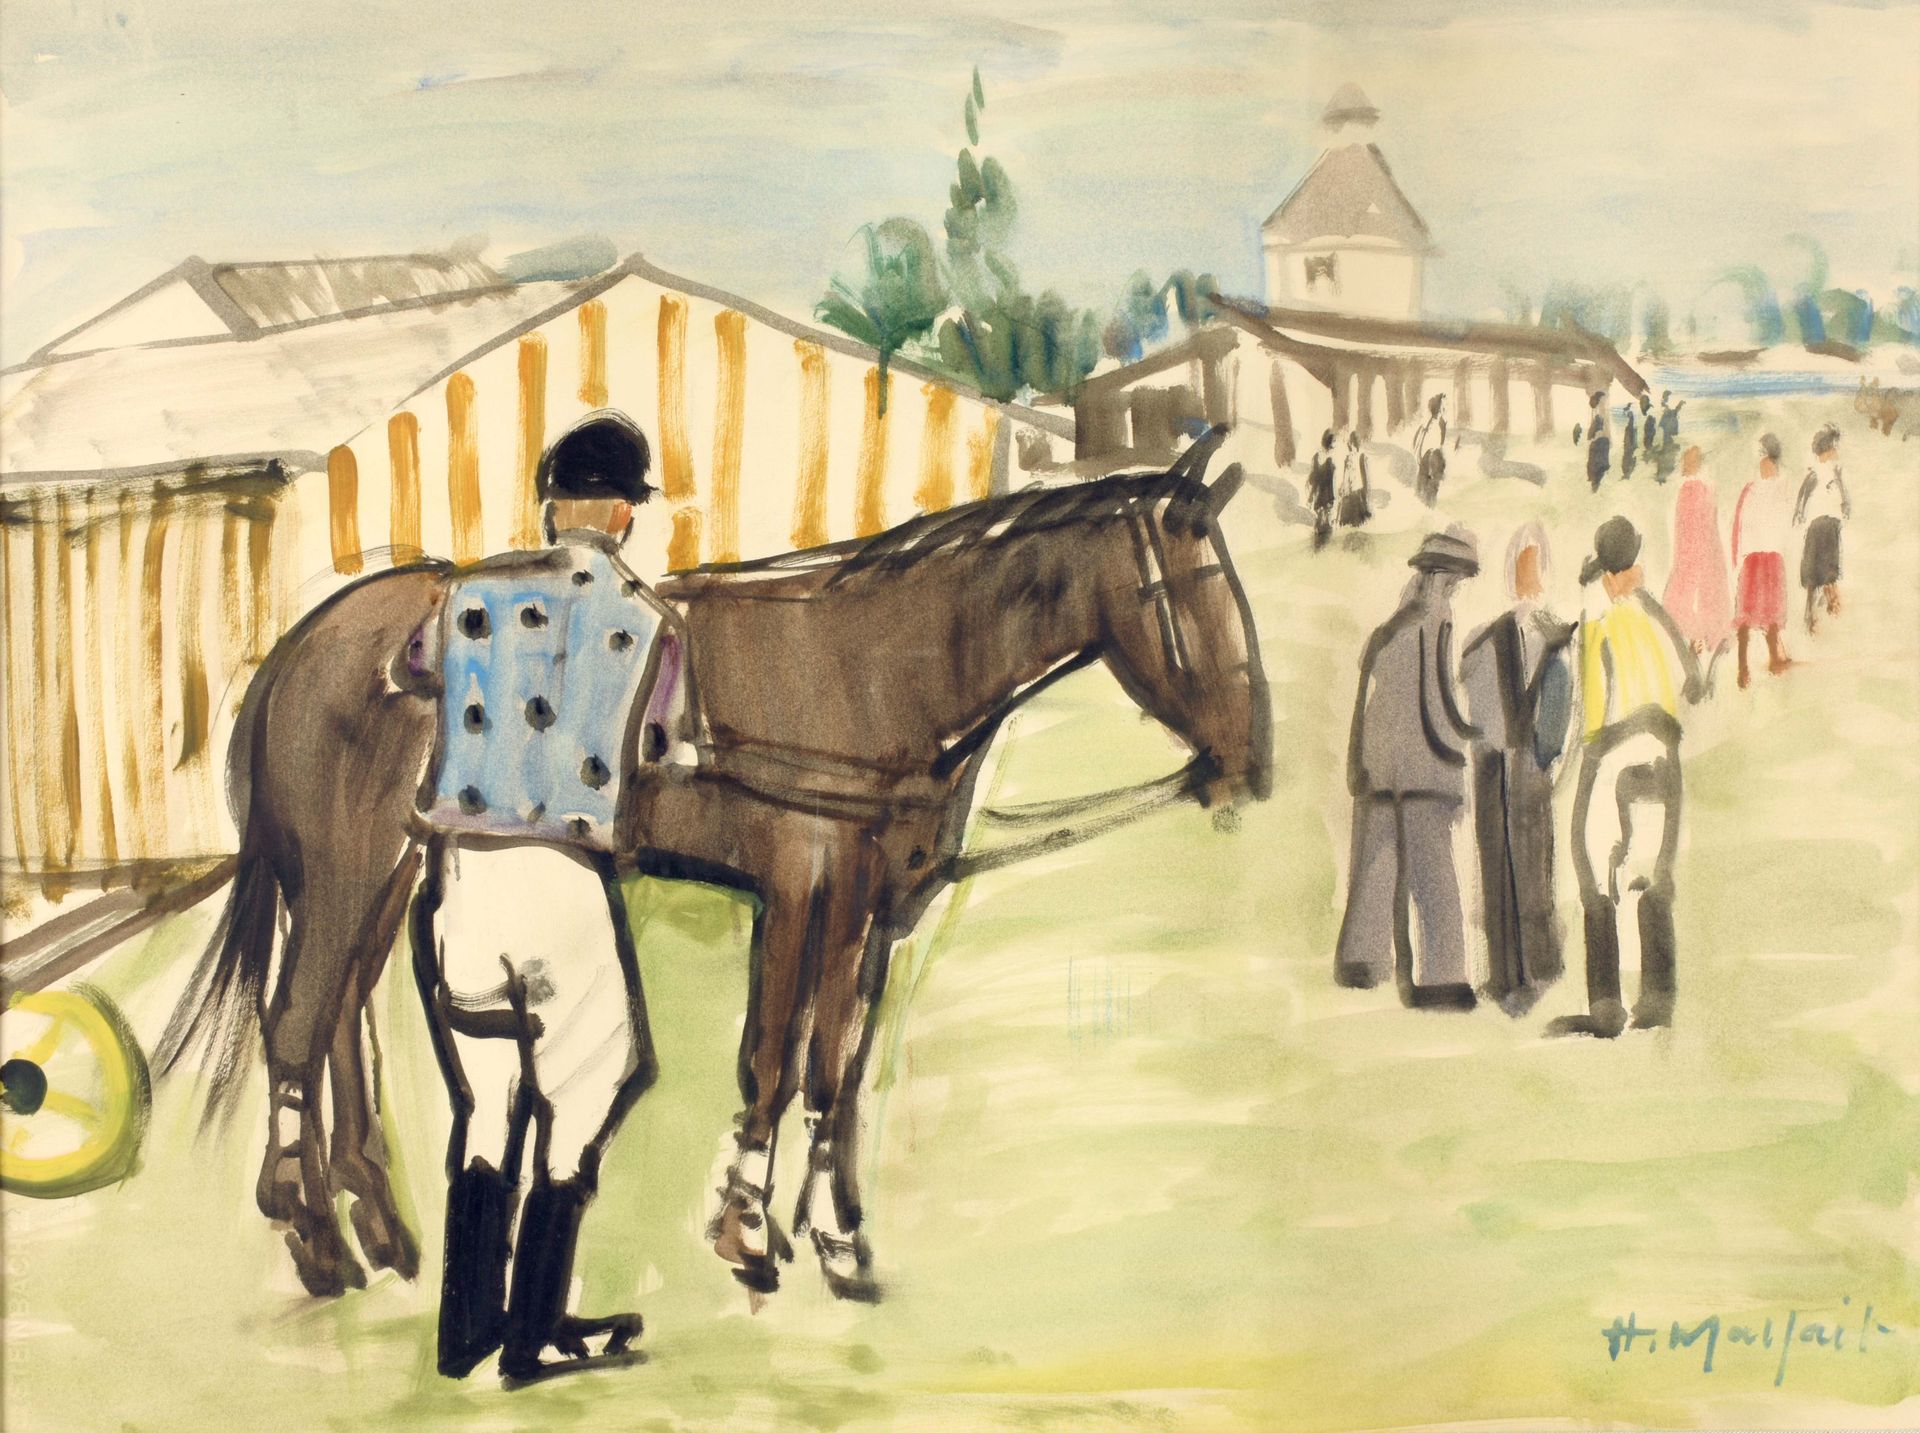 MALFAIT, Hubert (1898-1971) Ruiter en paard op renbaan

Watercolor (53 x 70 cm),&hellip;